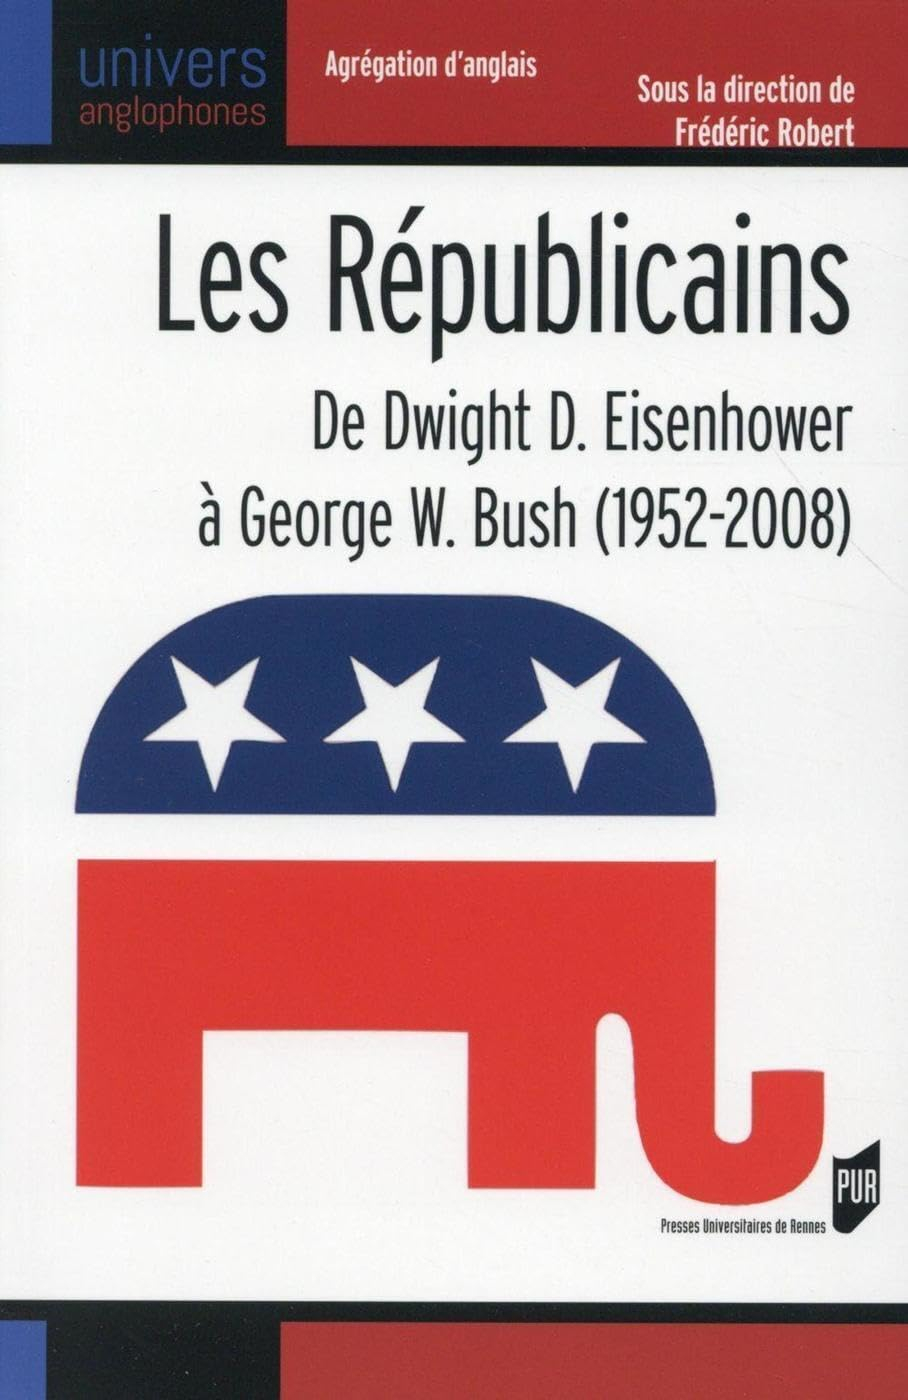 Les Républicains : de Dwight D. Eisenhower à George W. Bush, 1952-2008